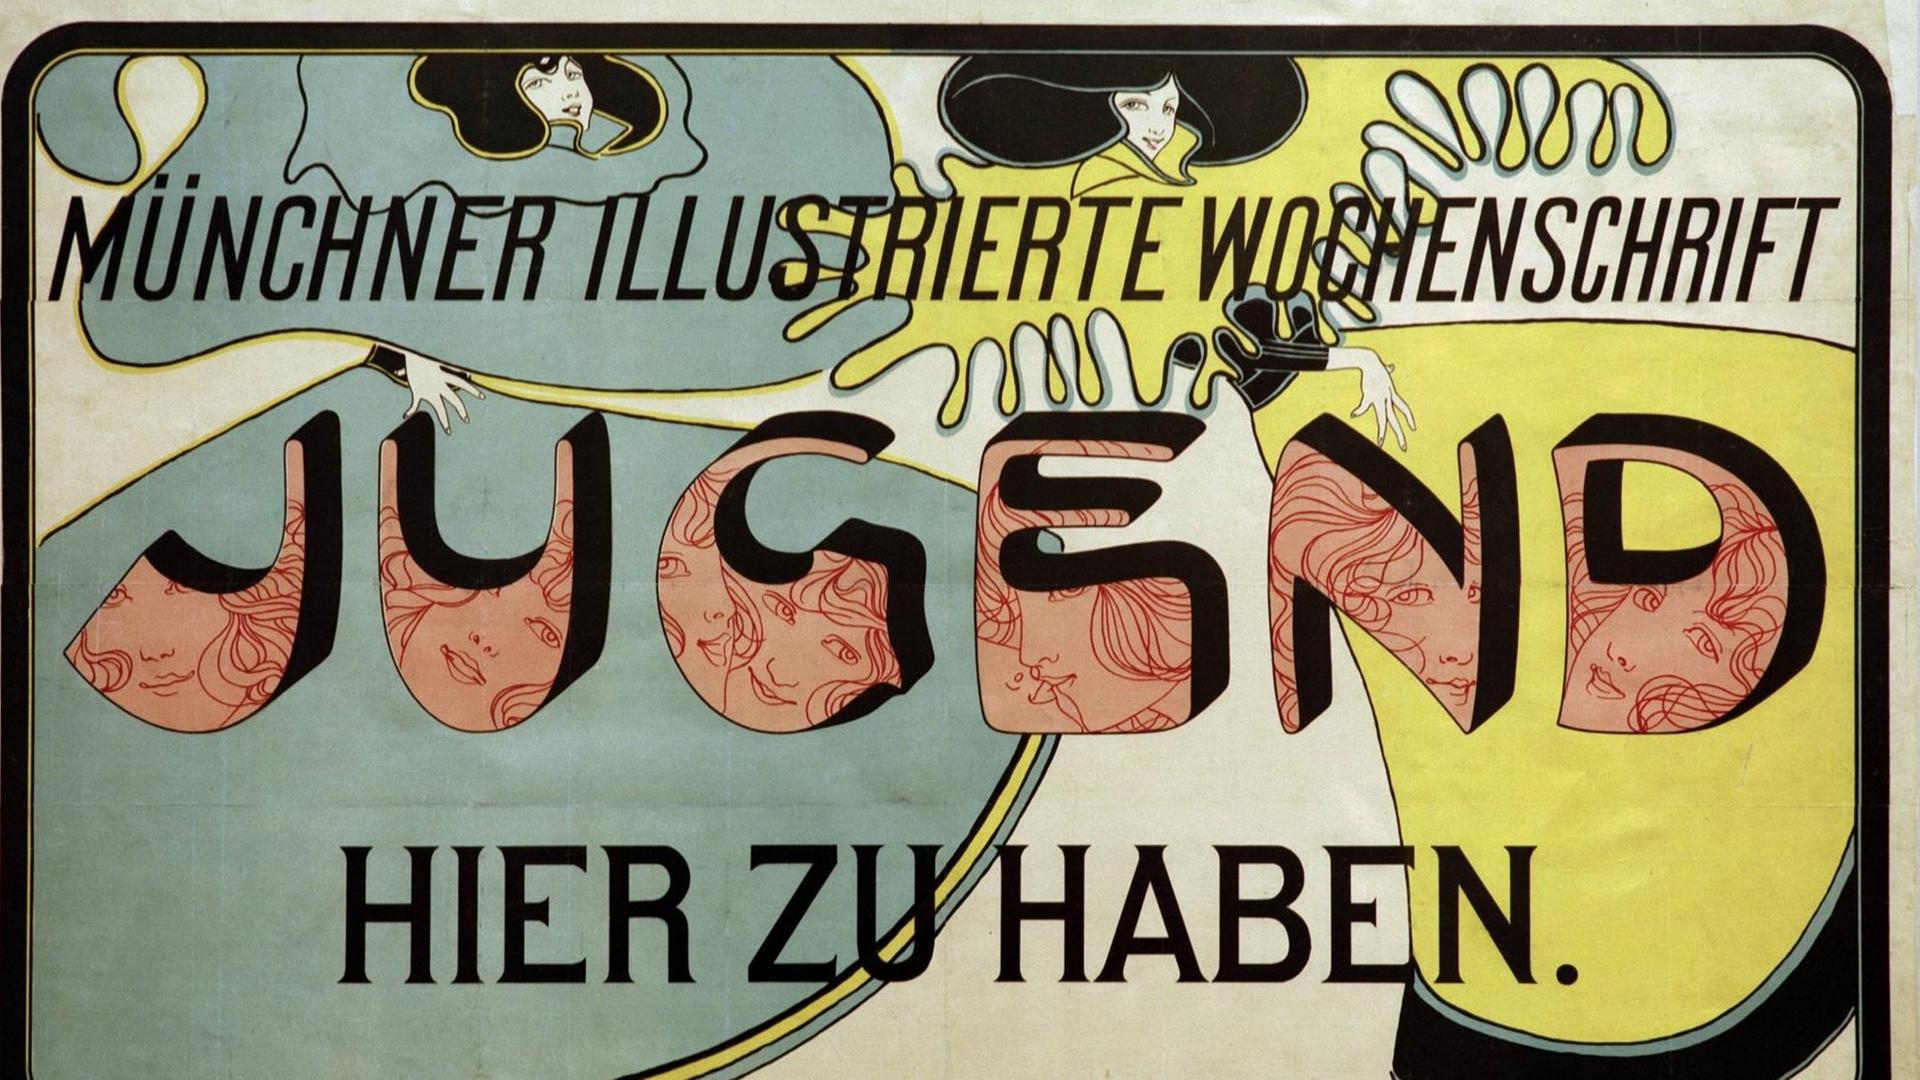 Ein farbiges Plakat mit einer Druckgrafik des Künstlers osef Rudolf Witzel wirbt mit den Worten“Münchner illustrierte Wochenschrift 'Jugend' hier zu haben"